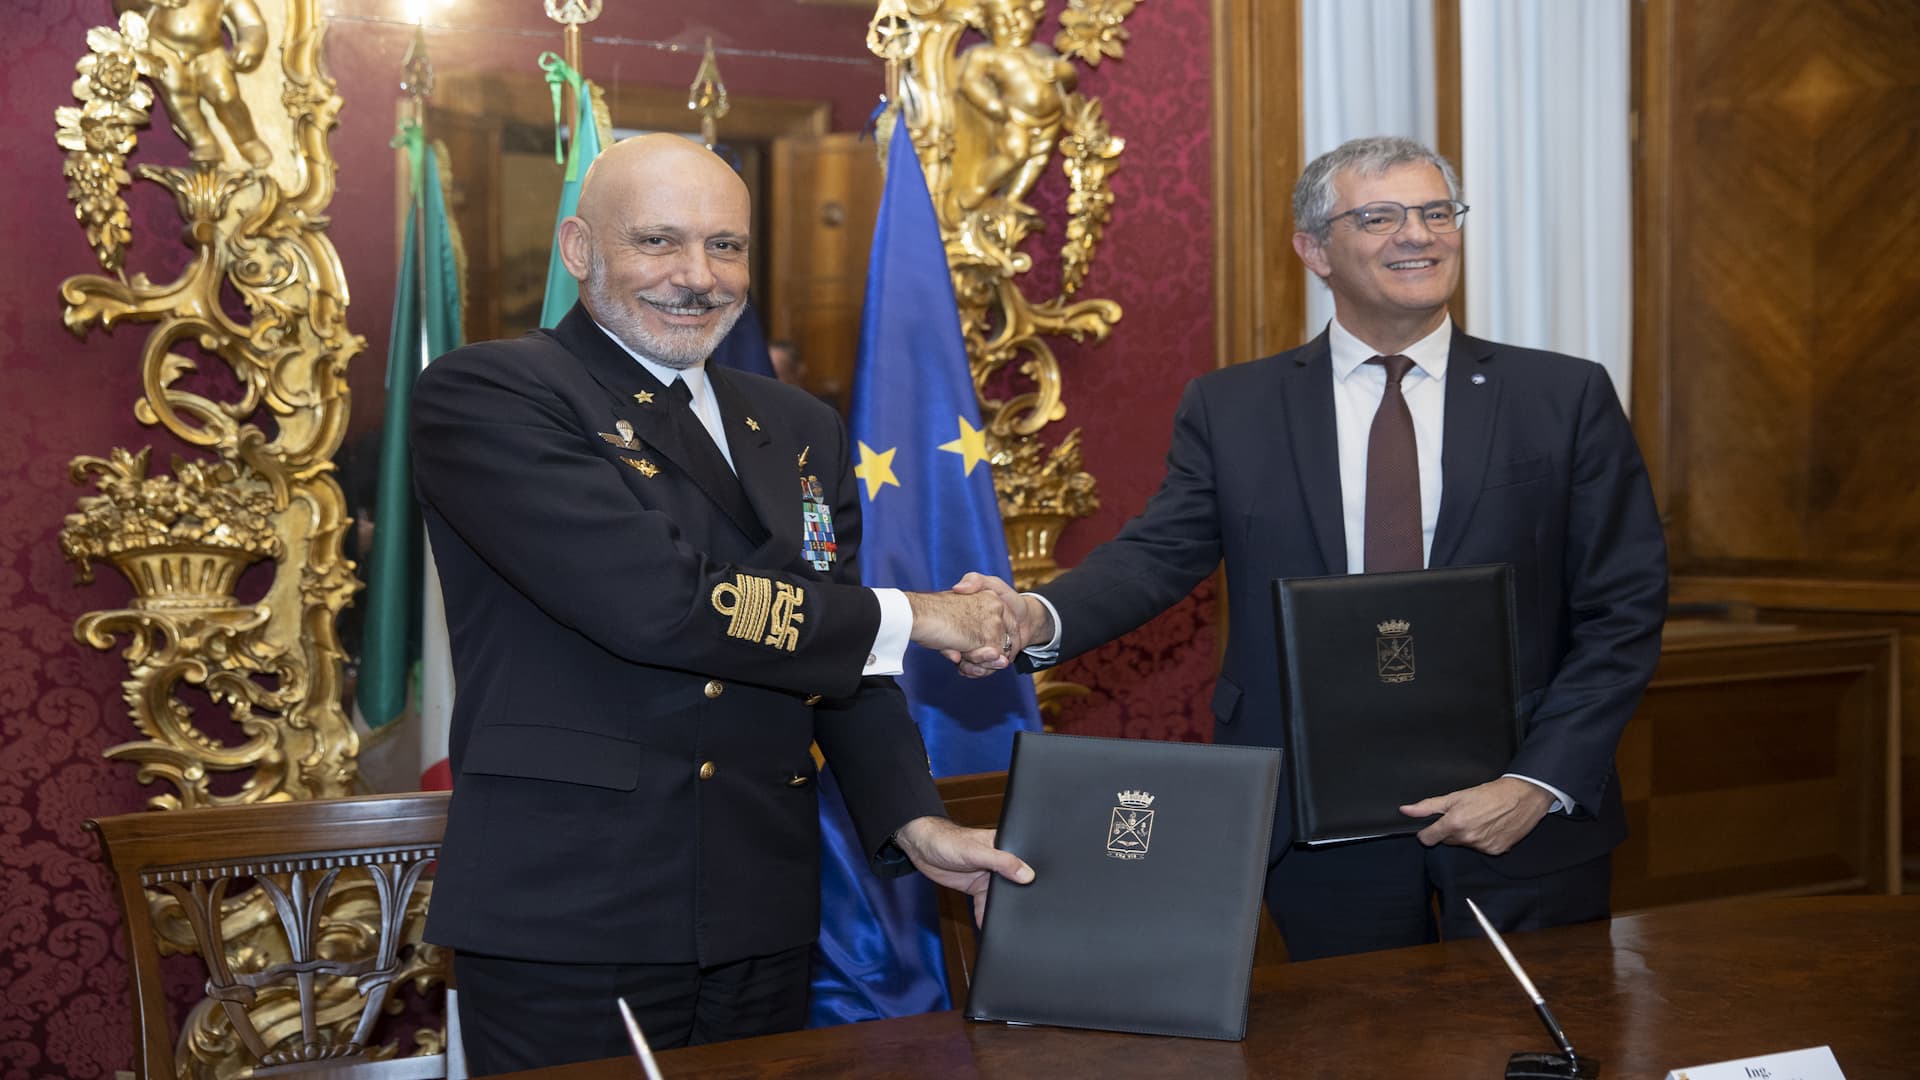 ASI - Ministero della Difesa e Agenzia Spaziale Italiana firmano un accordo quadro nel settore spaziale